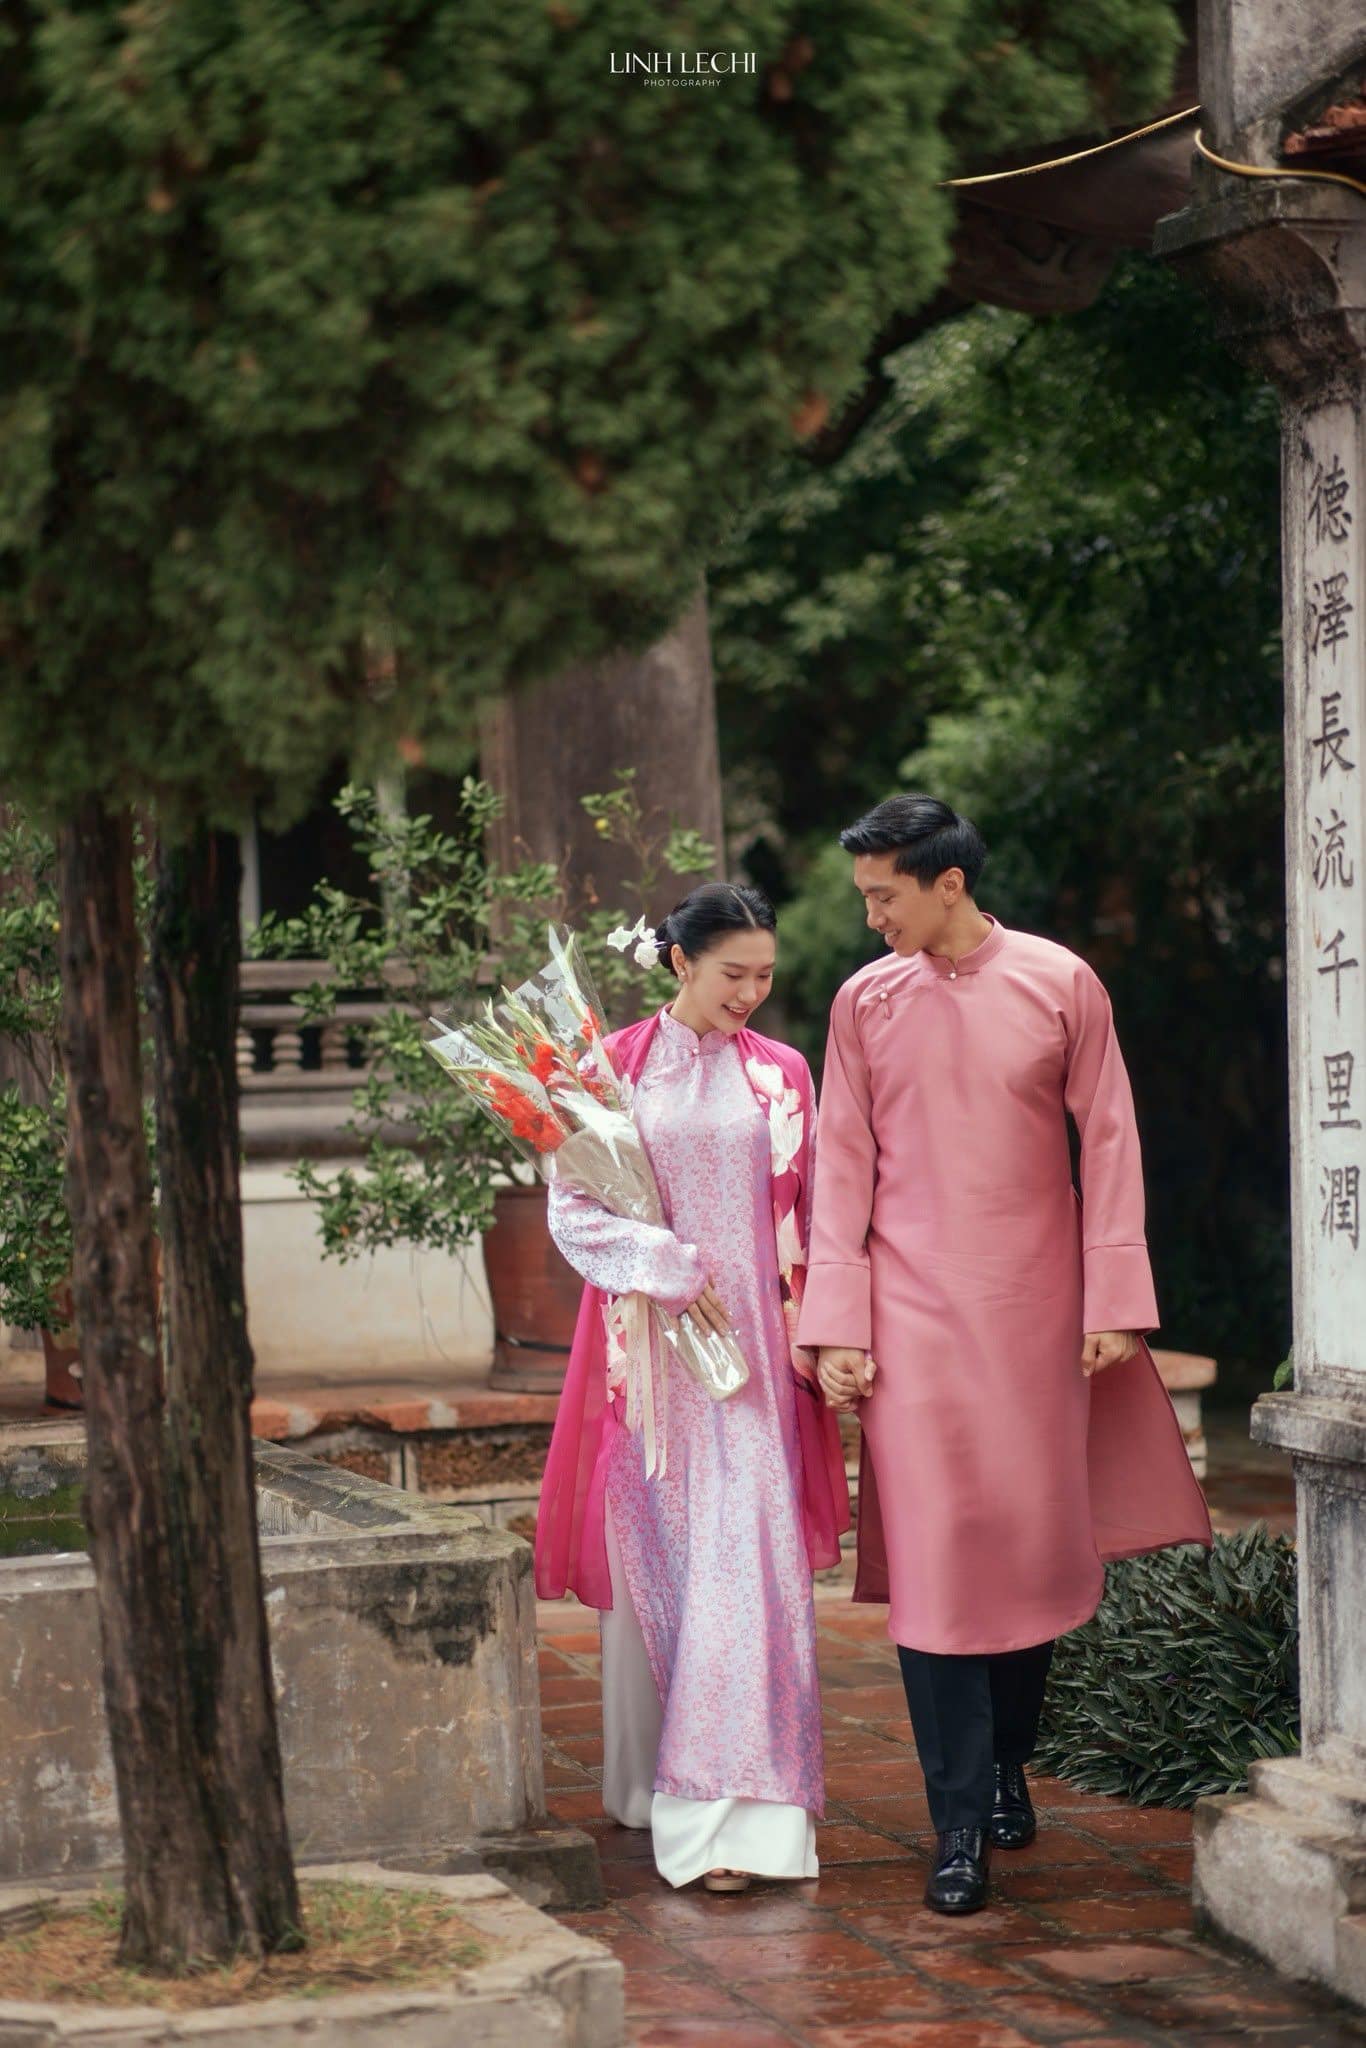 Quang Hải và Chu Thanh Huyền tung ảnh cưới, dân tình lập tức so sánh với Doãn Hải My và Đoàn Văn Hậu - ảnh 2